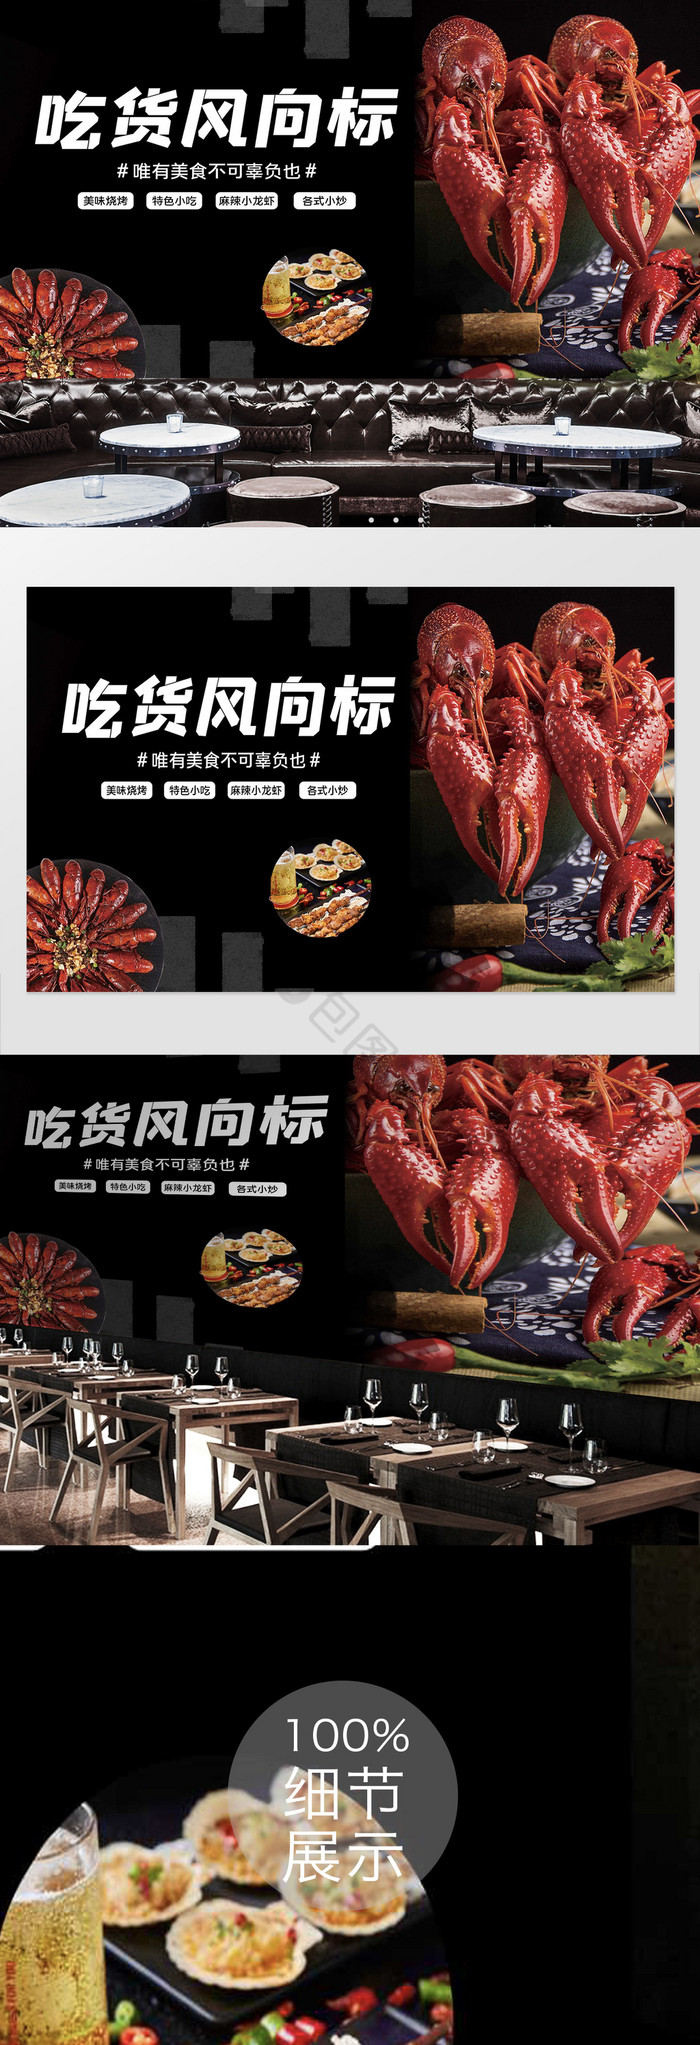 小龙虾餐饮宣传广告背景墙